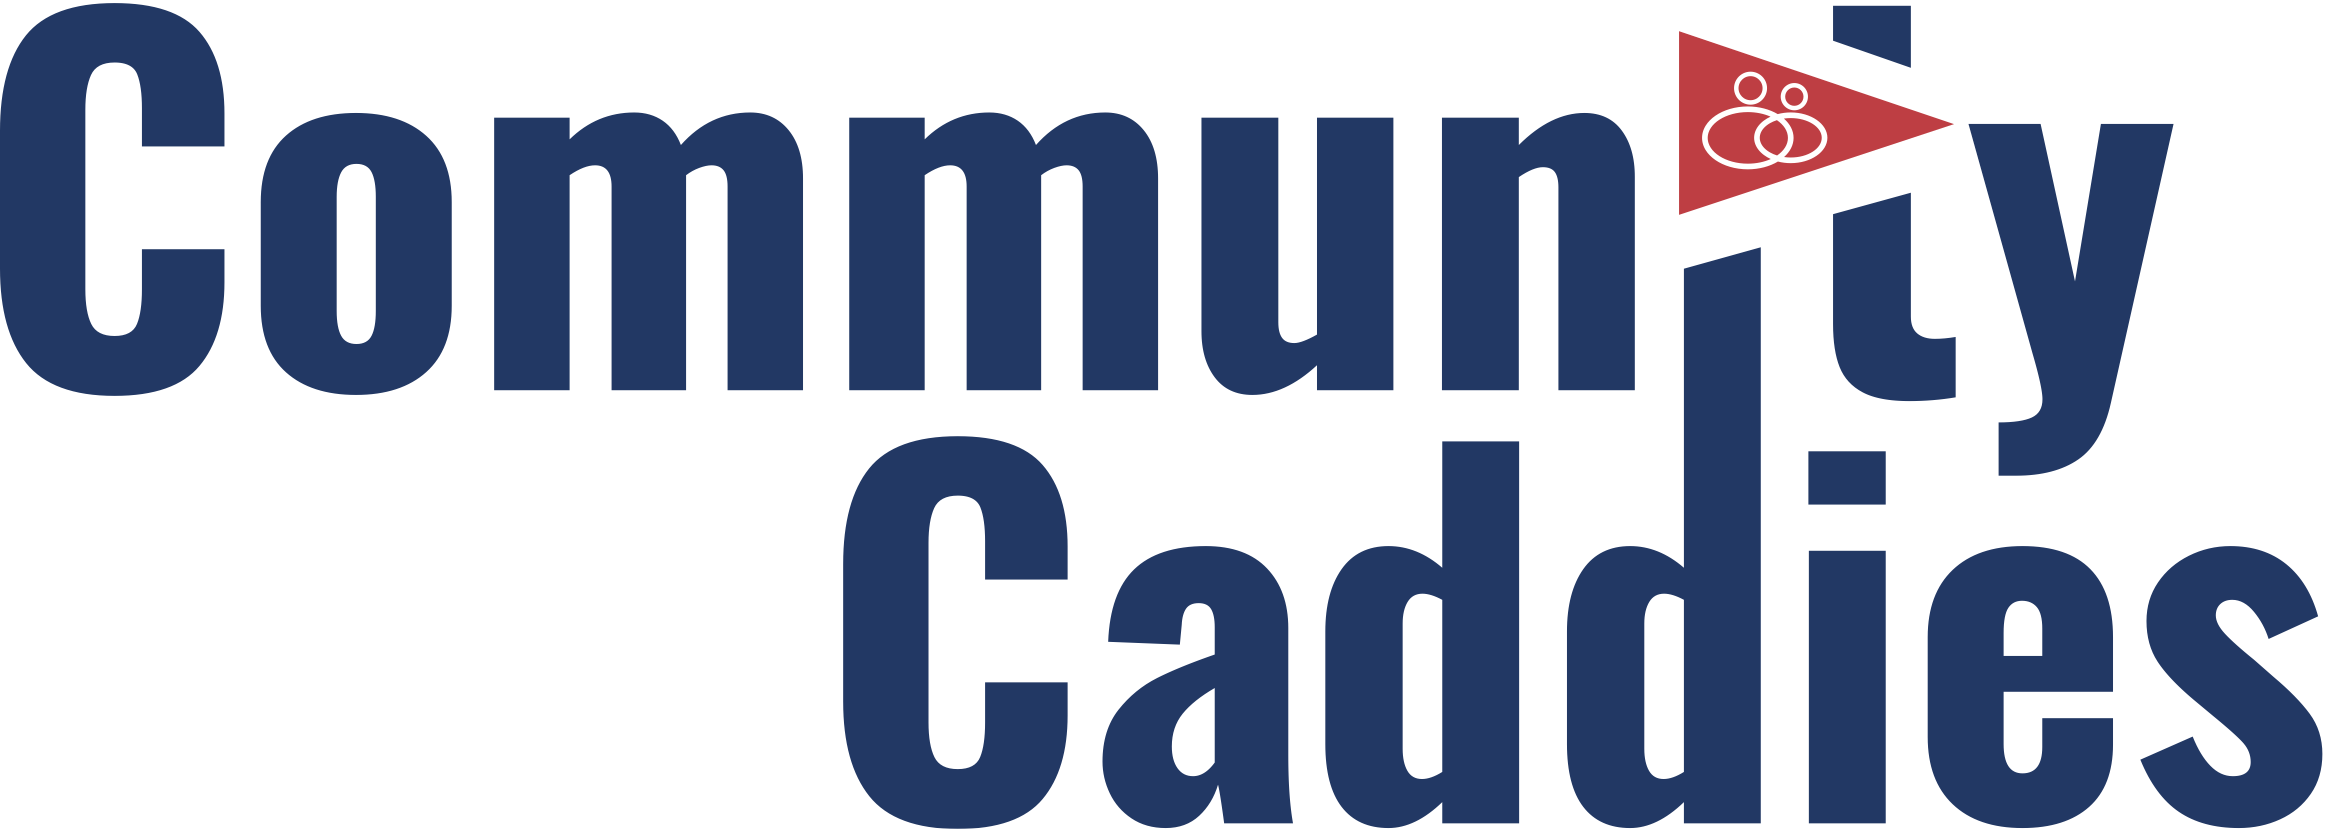 Community Caddies Logo